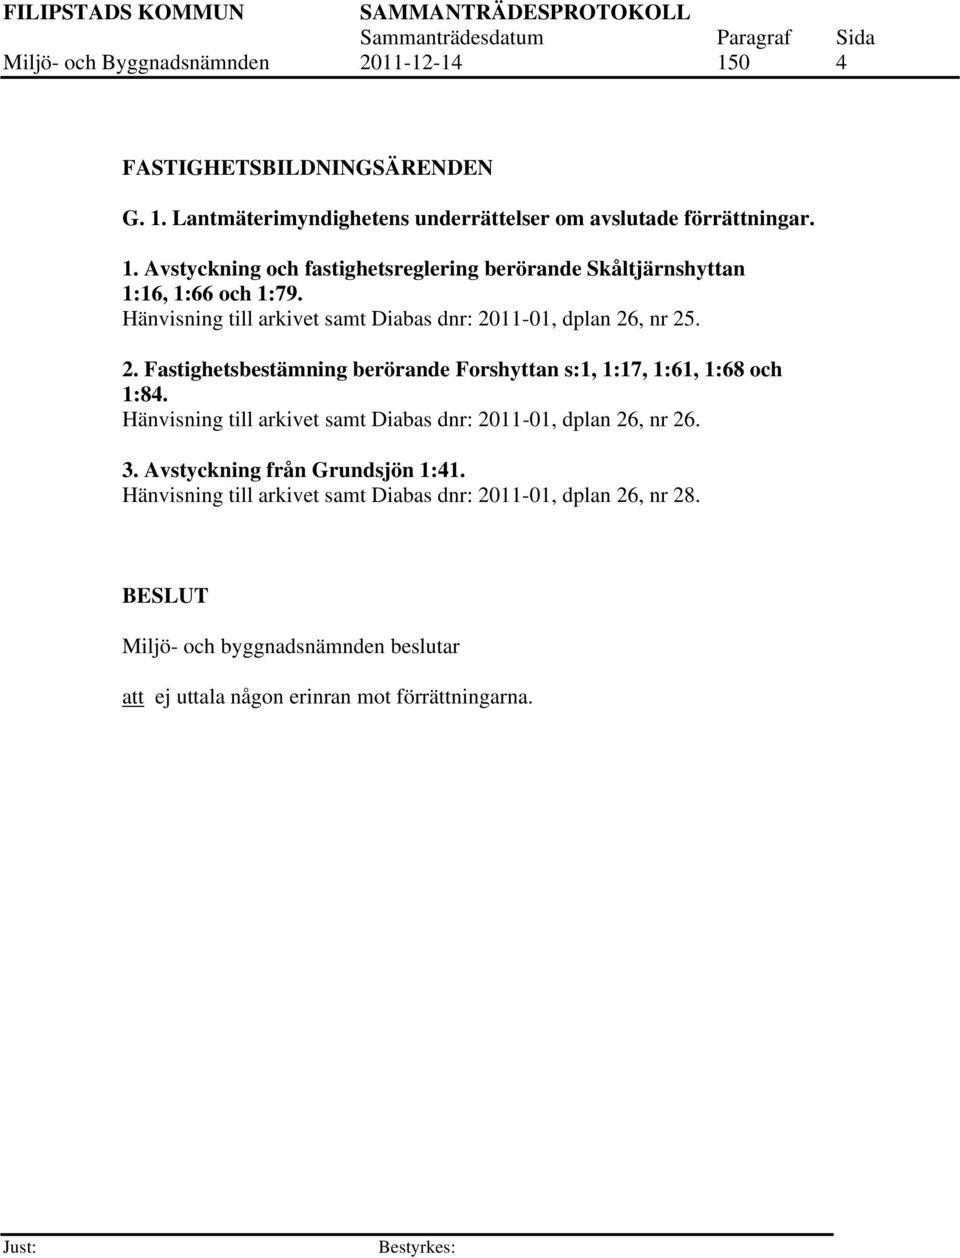 Hänvisning till arkivet samt Diabas dnr: 2011-01, dplan 26, nr 26. 3. Avstyckning från Grundsjön 1:41.